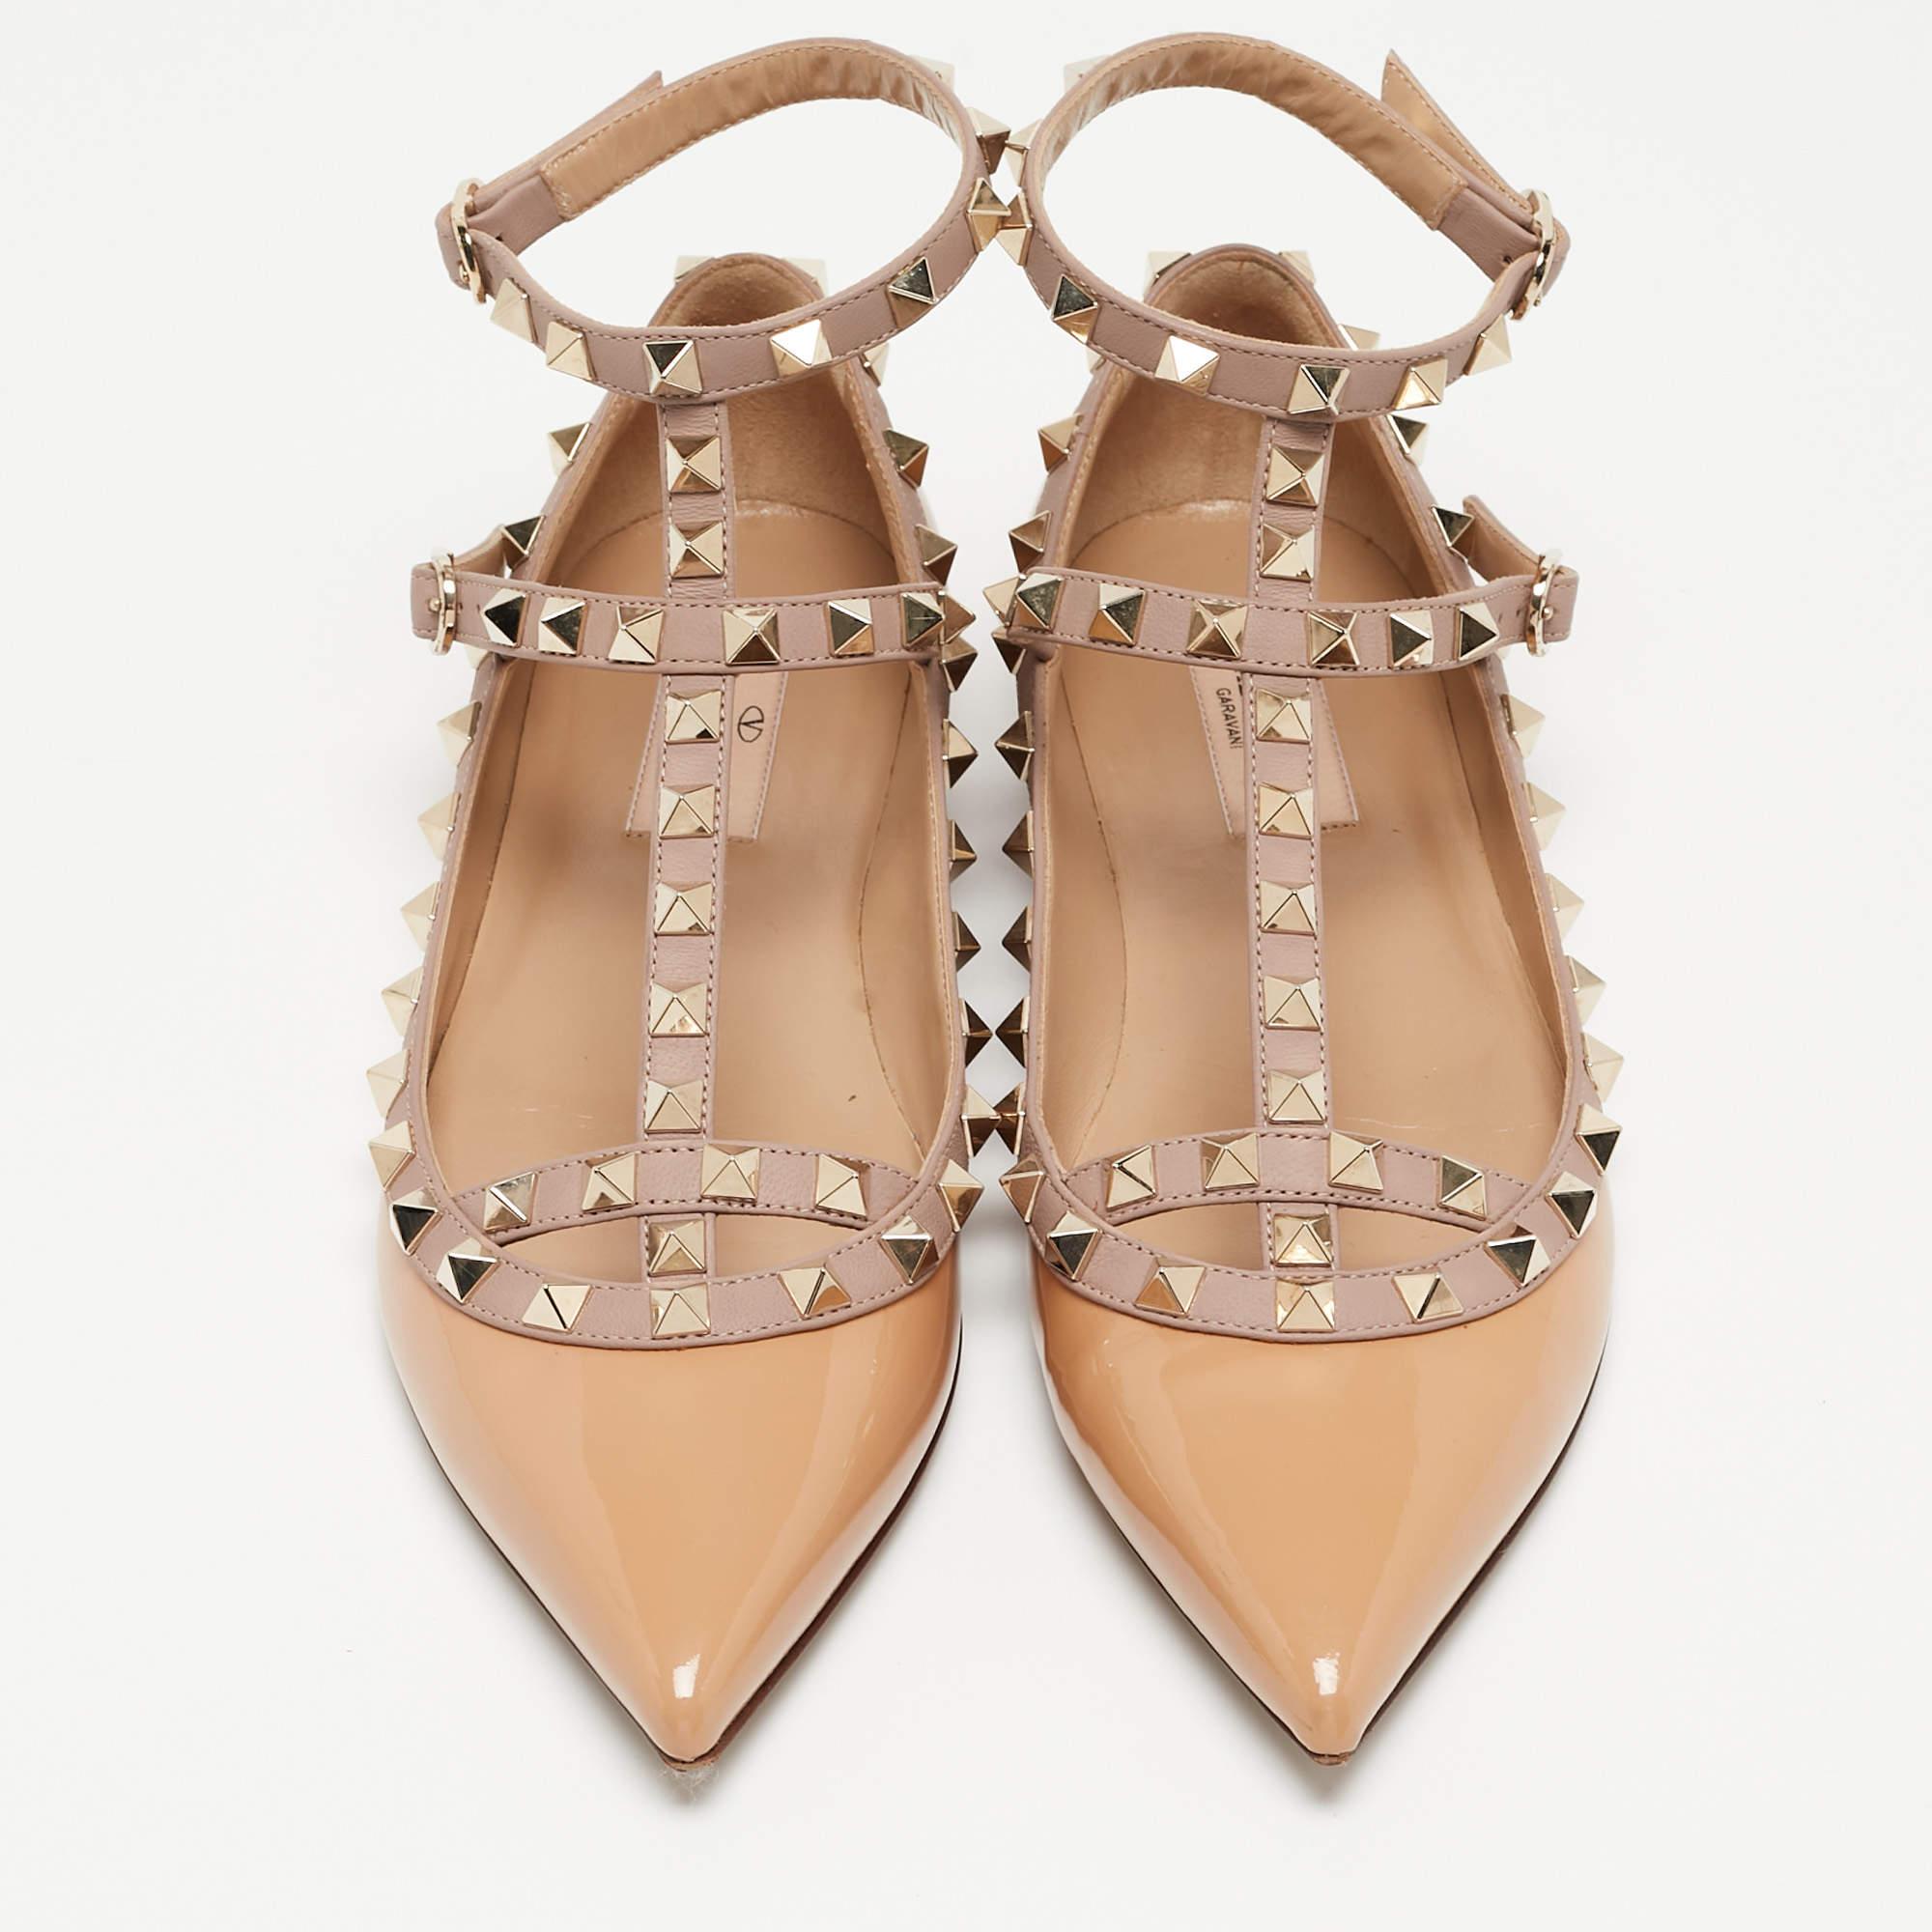 Diese Valentino Ballettschuhe für Damen sind raffiniert und bequem. Diese vielseitigen Schuhe sind exquisit verarbeitet und verbinden zeitlose Eleganz mit alltäglicher Leichtigkeit.

Enthält: Original-Staubbeutel, Original-Box, Info-Booklet,